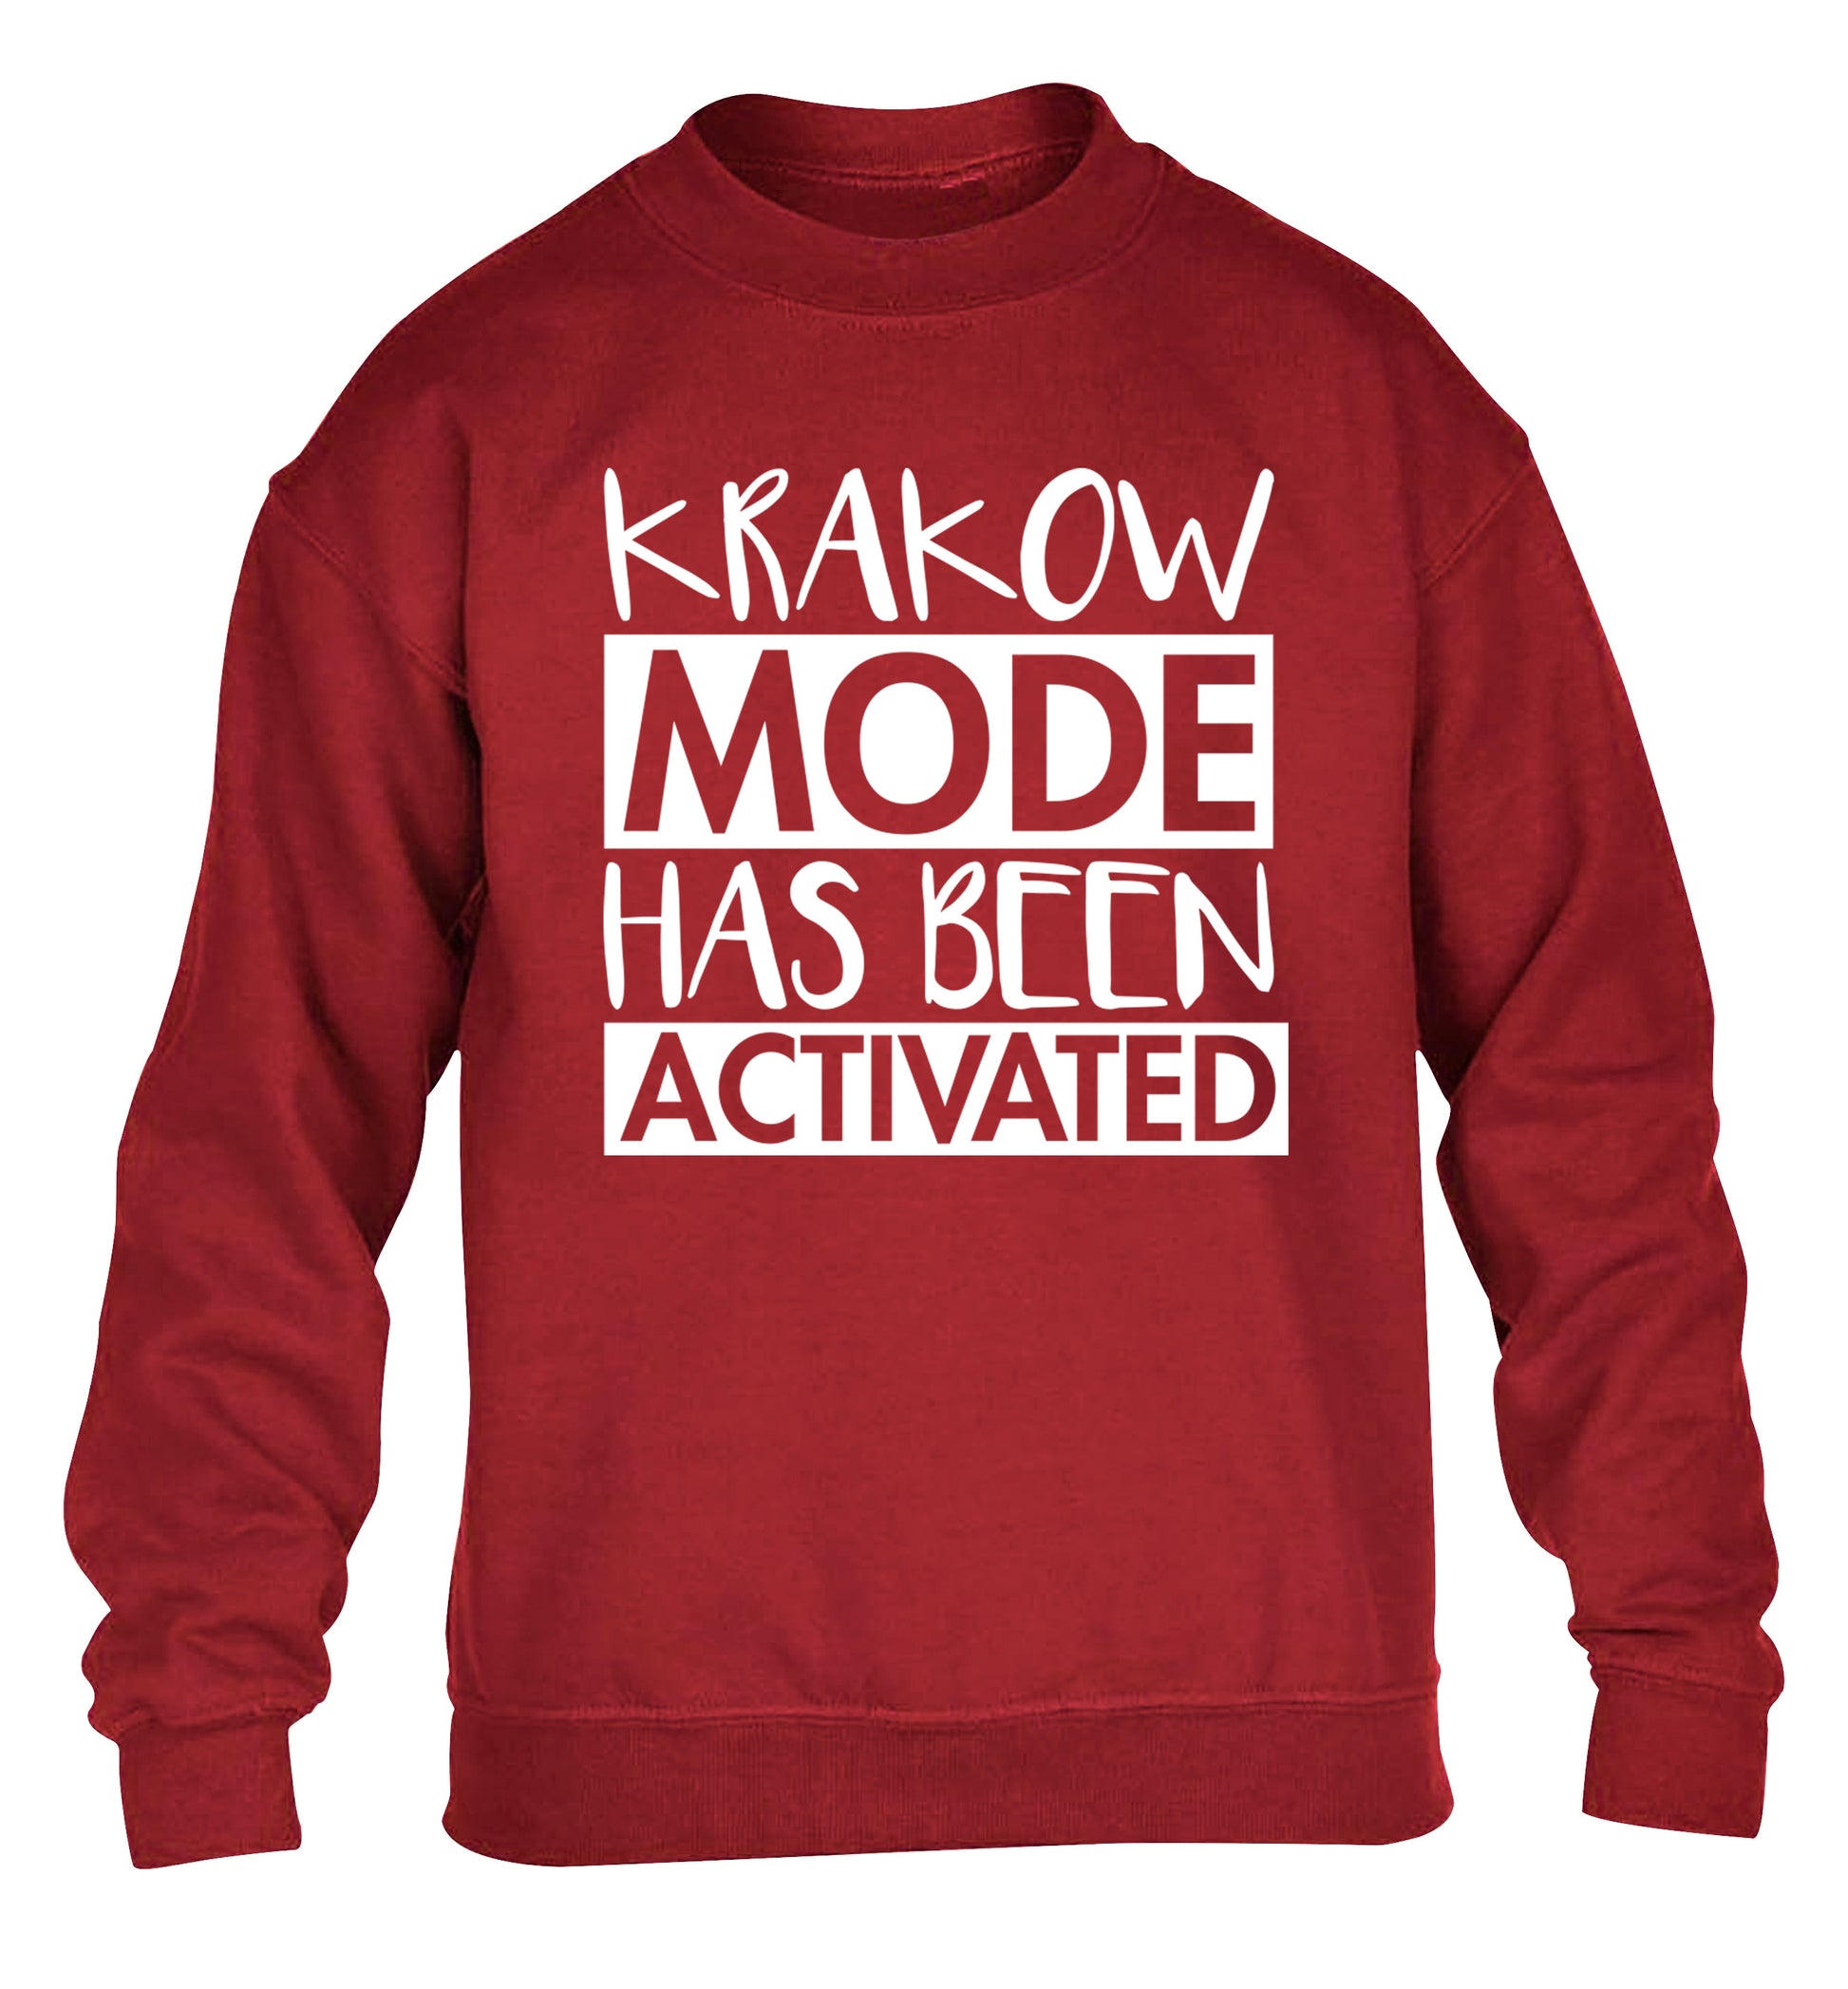 Krakow mode has been activated children's grey sweater 12-13 Years